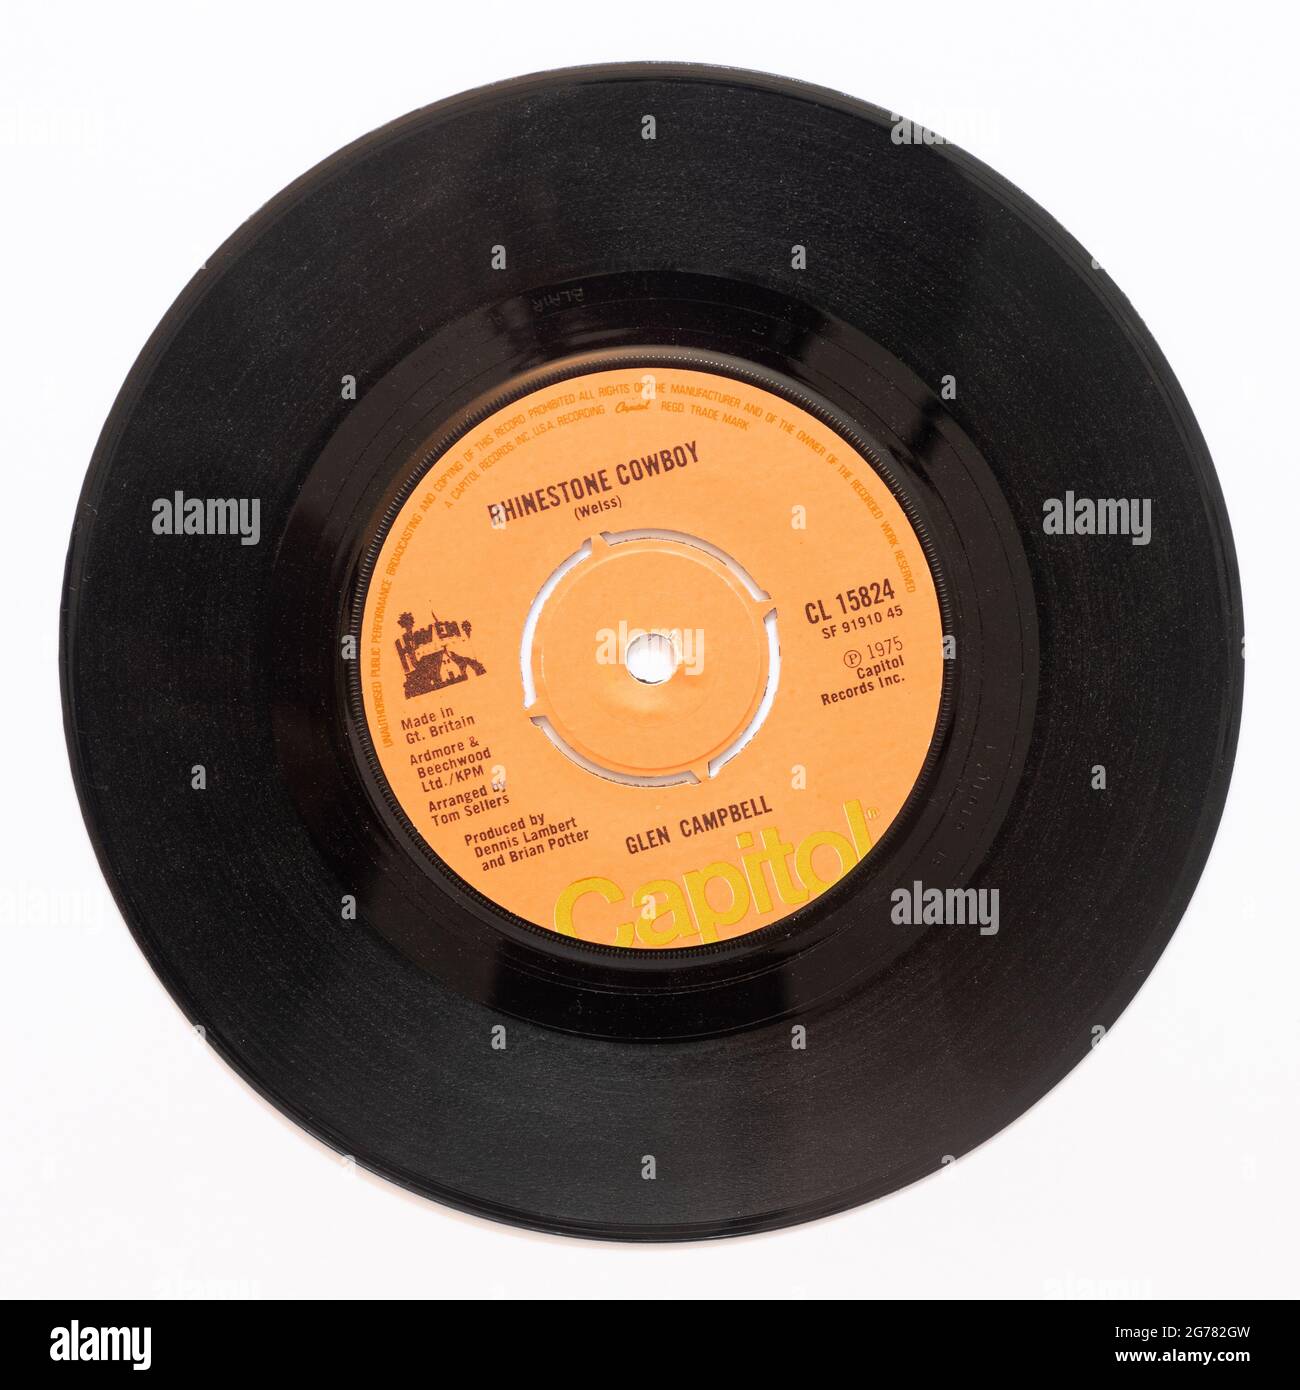 Rhinestone Cowboy de Glen Campbell, une photo du record de 7' single vinyle 45 tr/min en couverture Banque D'Images